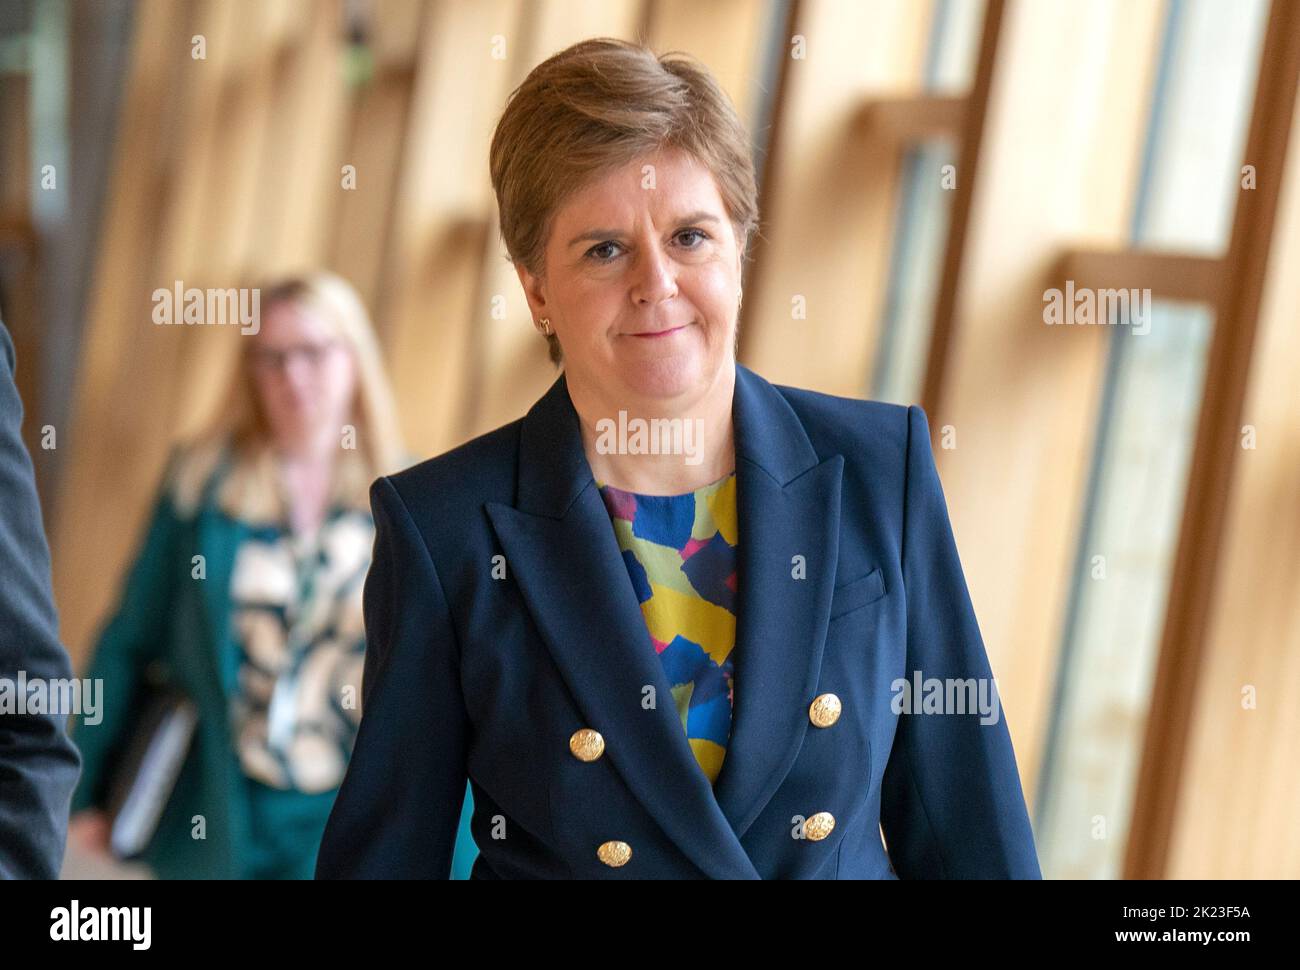 Il primo Ministro Nicola Sturgeon arriva in anticipo sulle prime interrogazioni del Ministro (FMQ) nella camera di discussione del Parlamento scozzese a Edimburgo. Data immagine: Giovedì 22 settembre 2022. Foto Stock